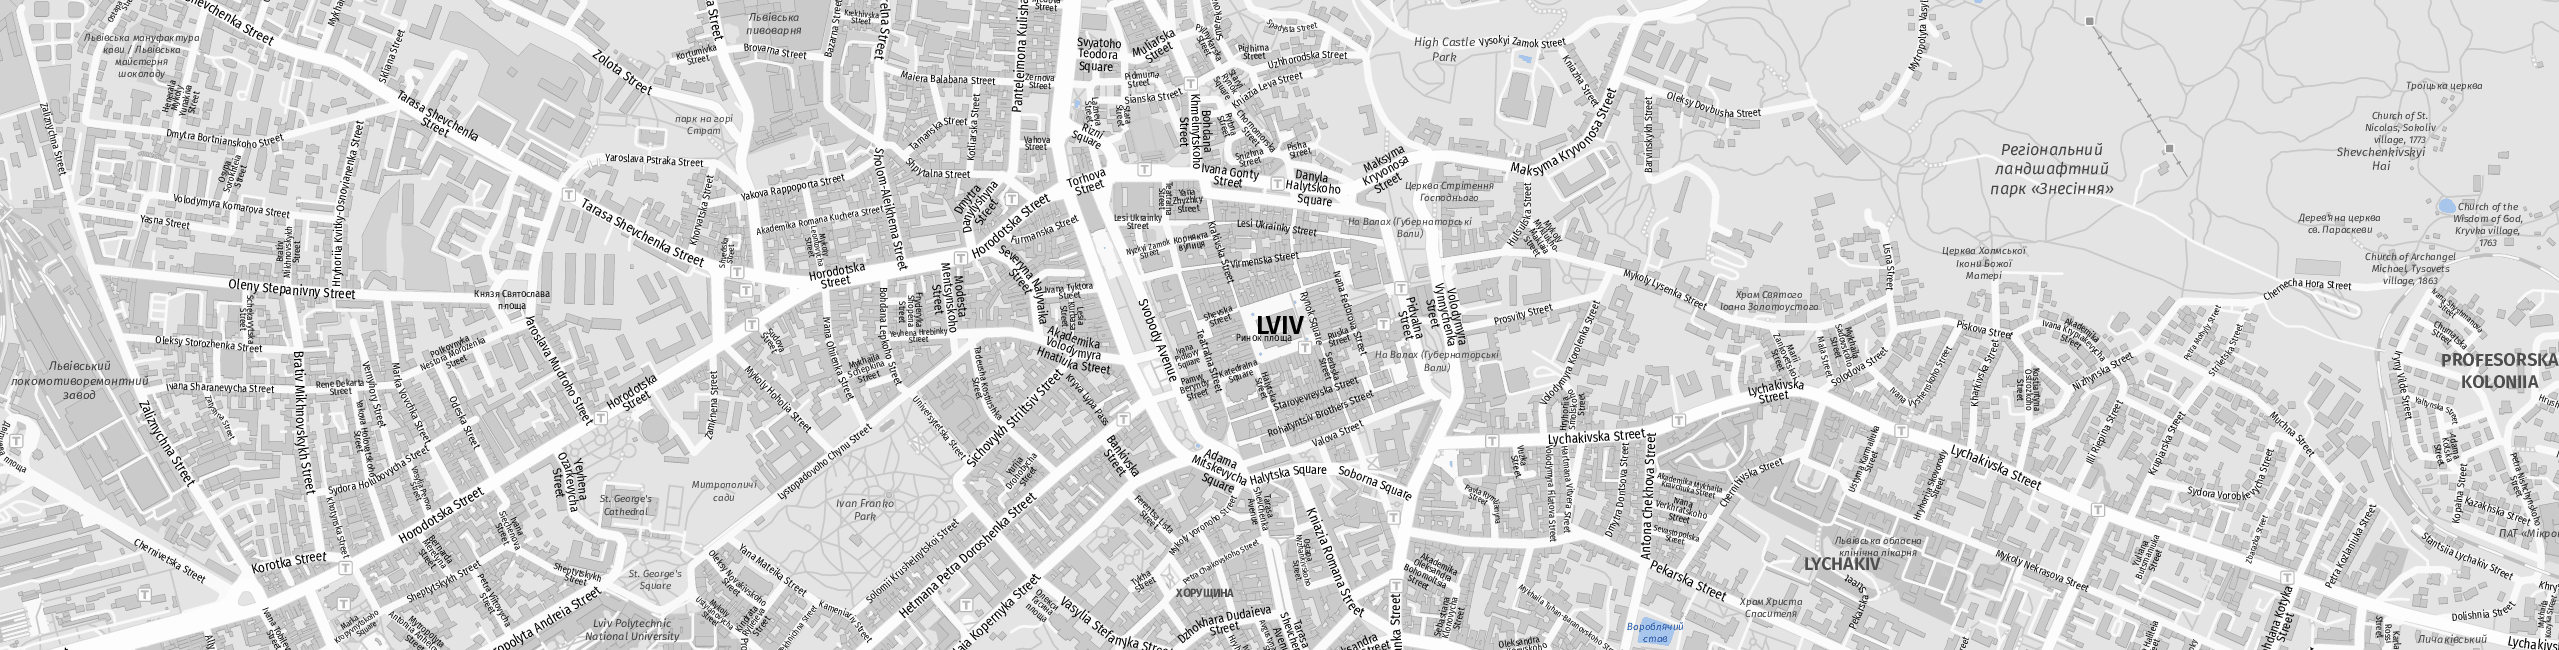 Stadtplan Lviv zum Downloaden.